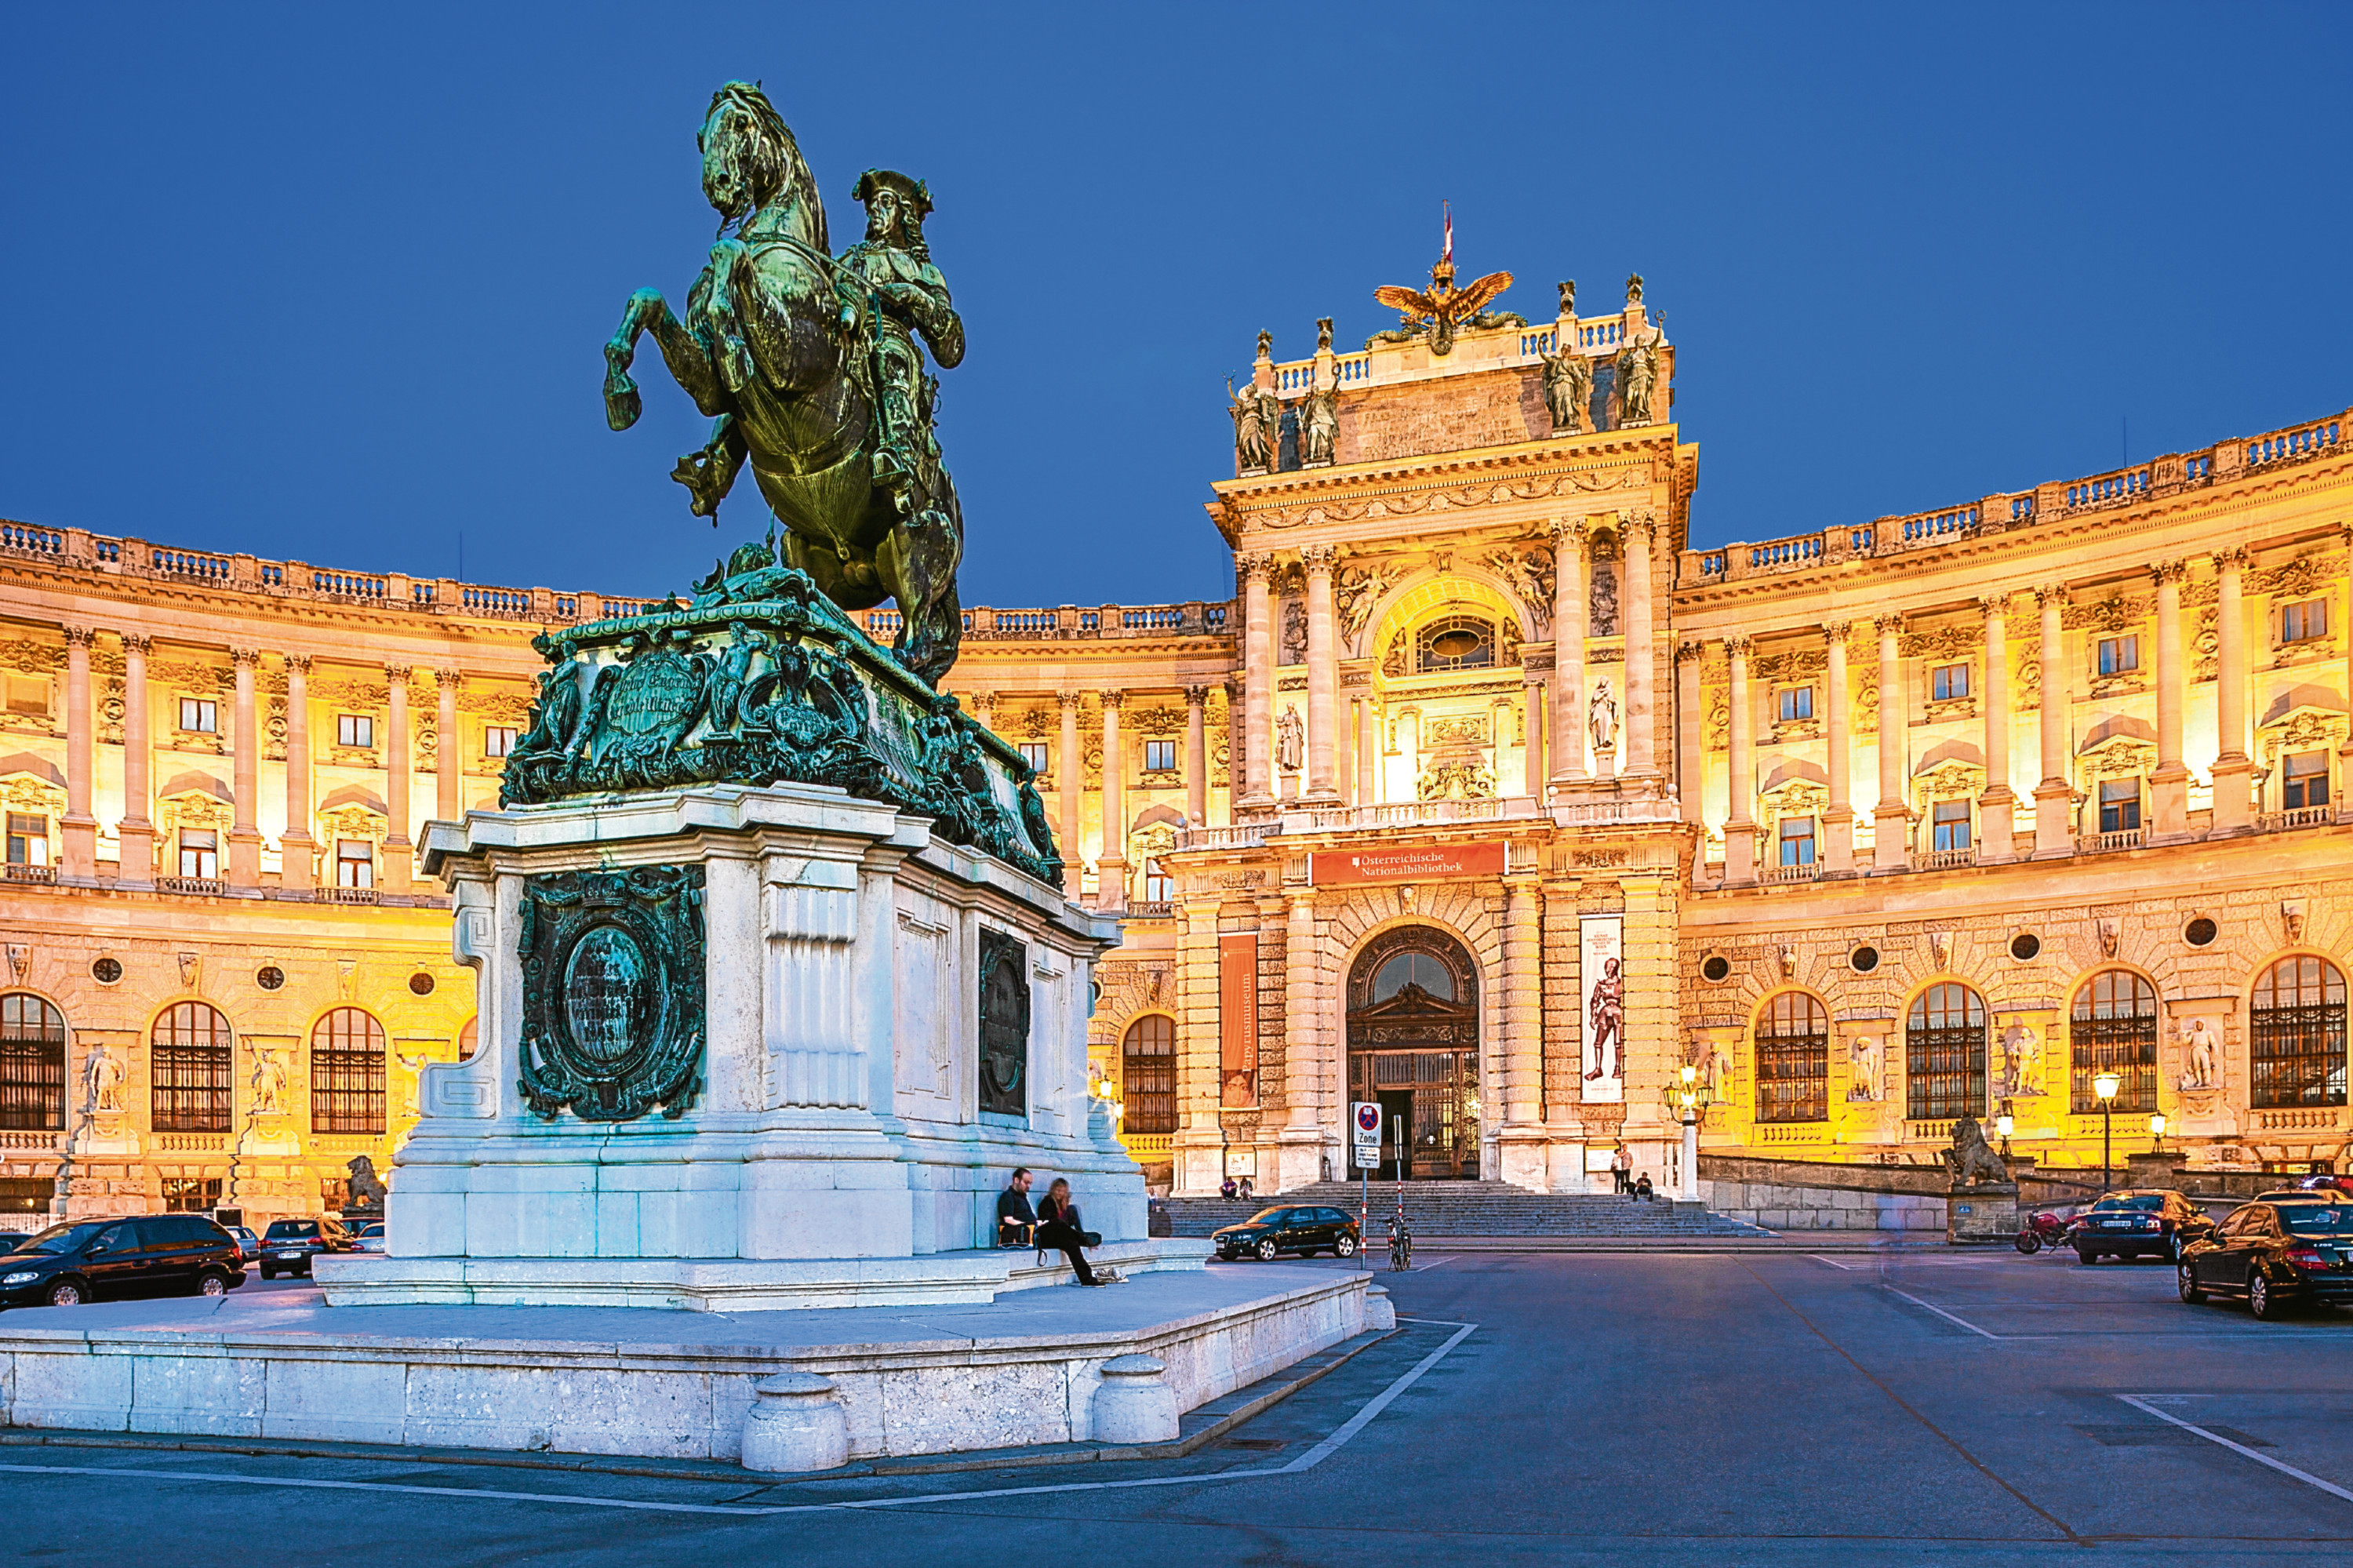 Vienna, Austria (Getty Images)